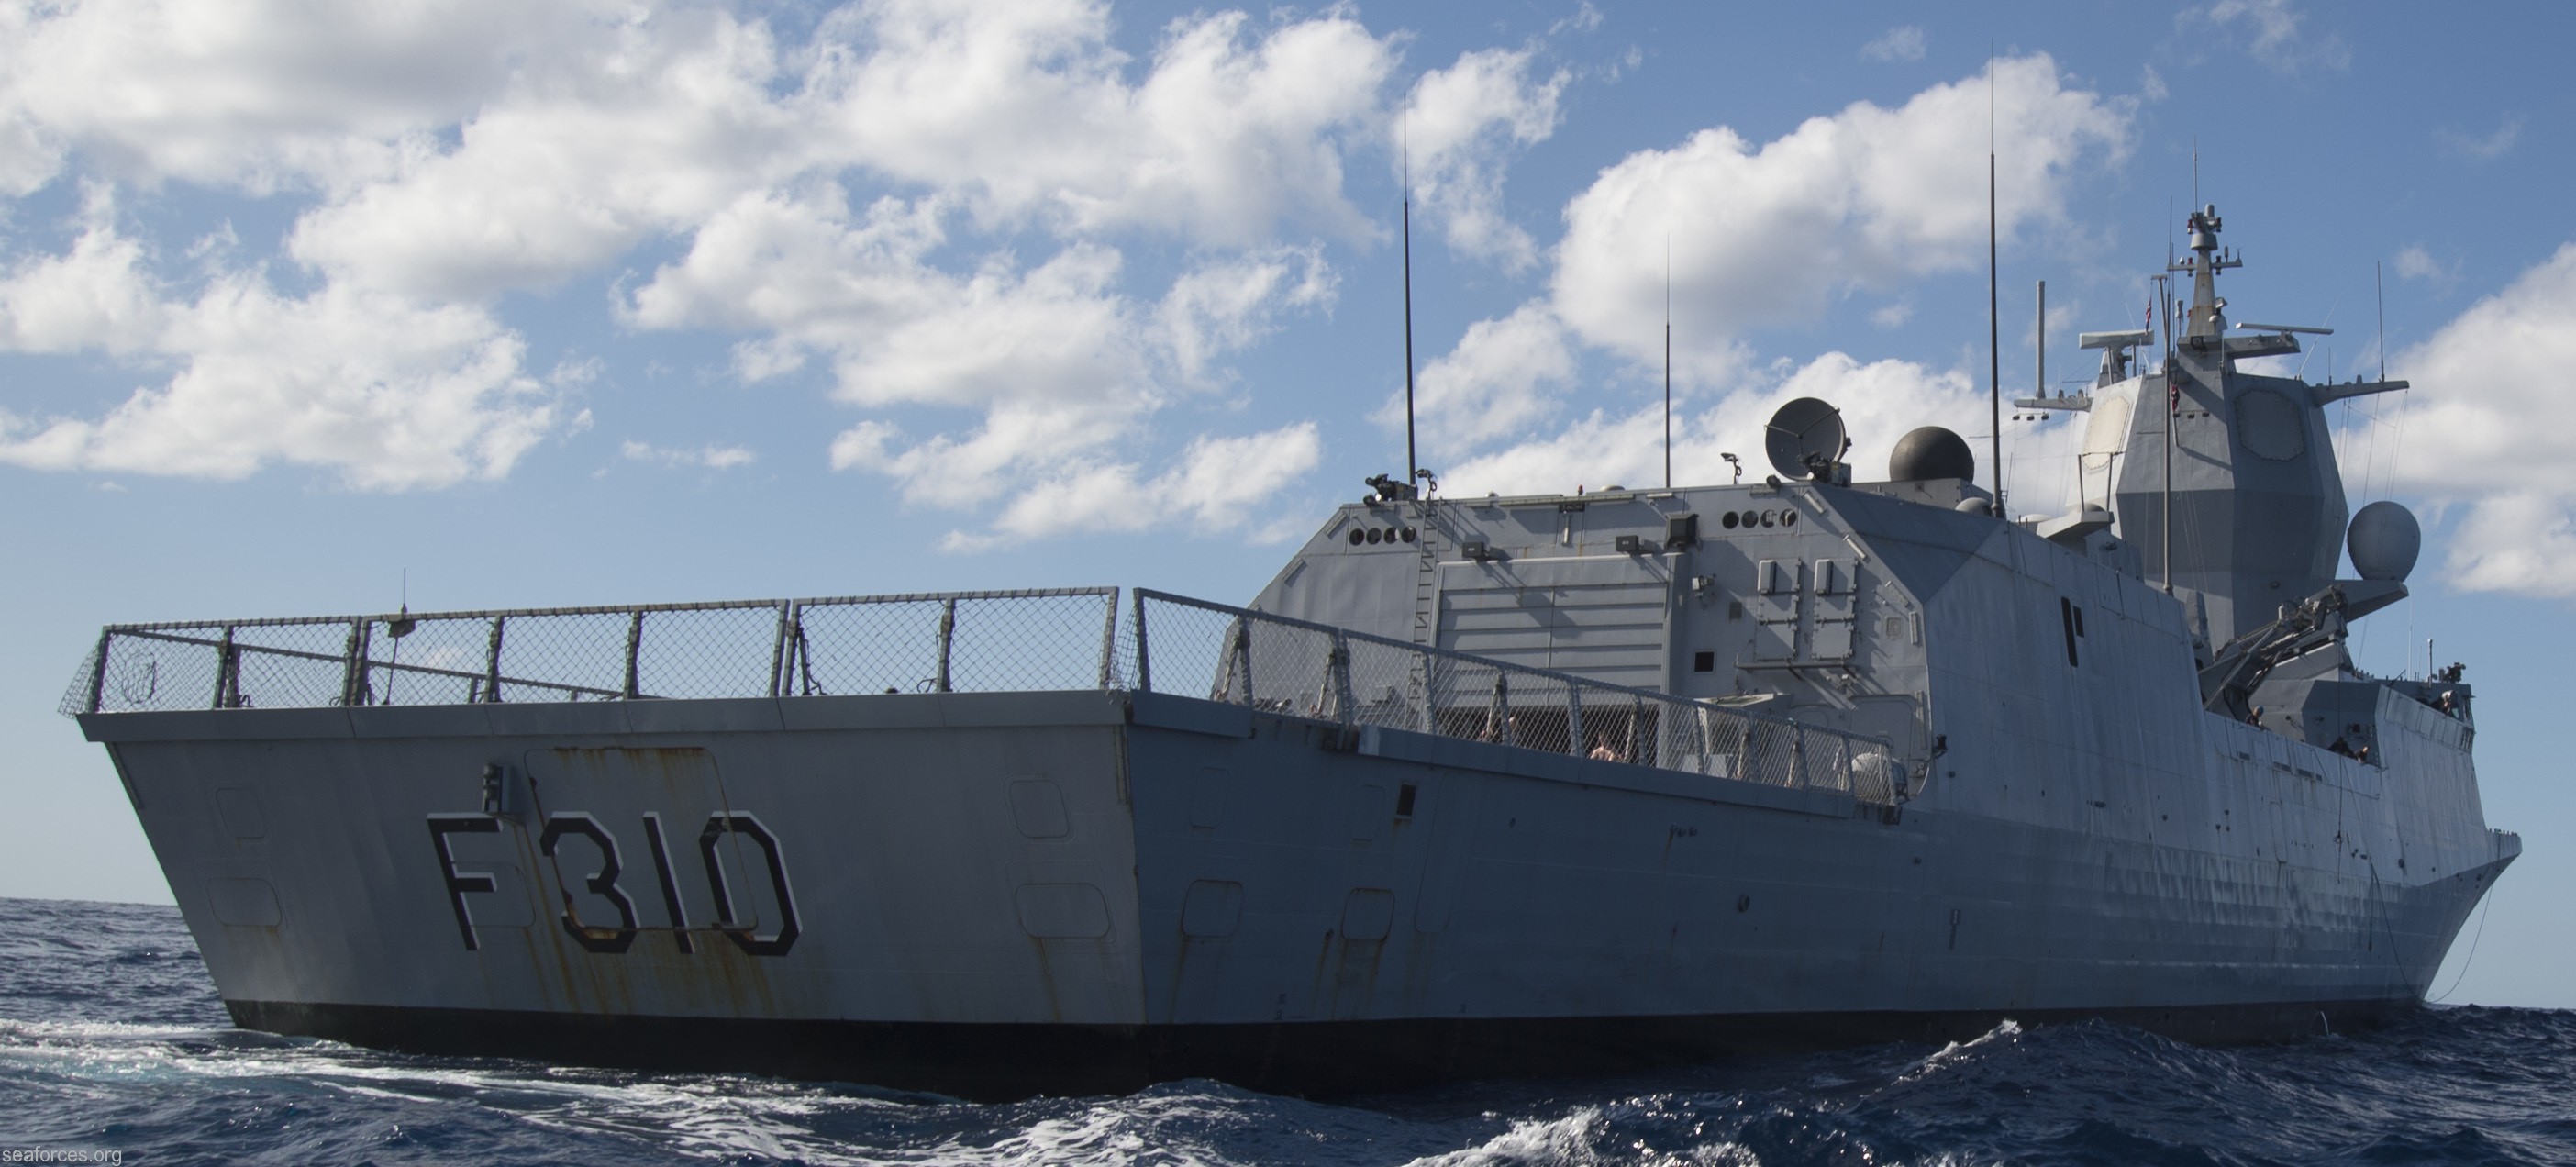 f-310 fridtjof nansen hnoms knm frigate royal norwegian navy sjoforsvaret 32